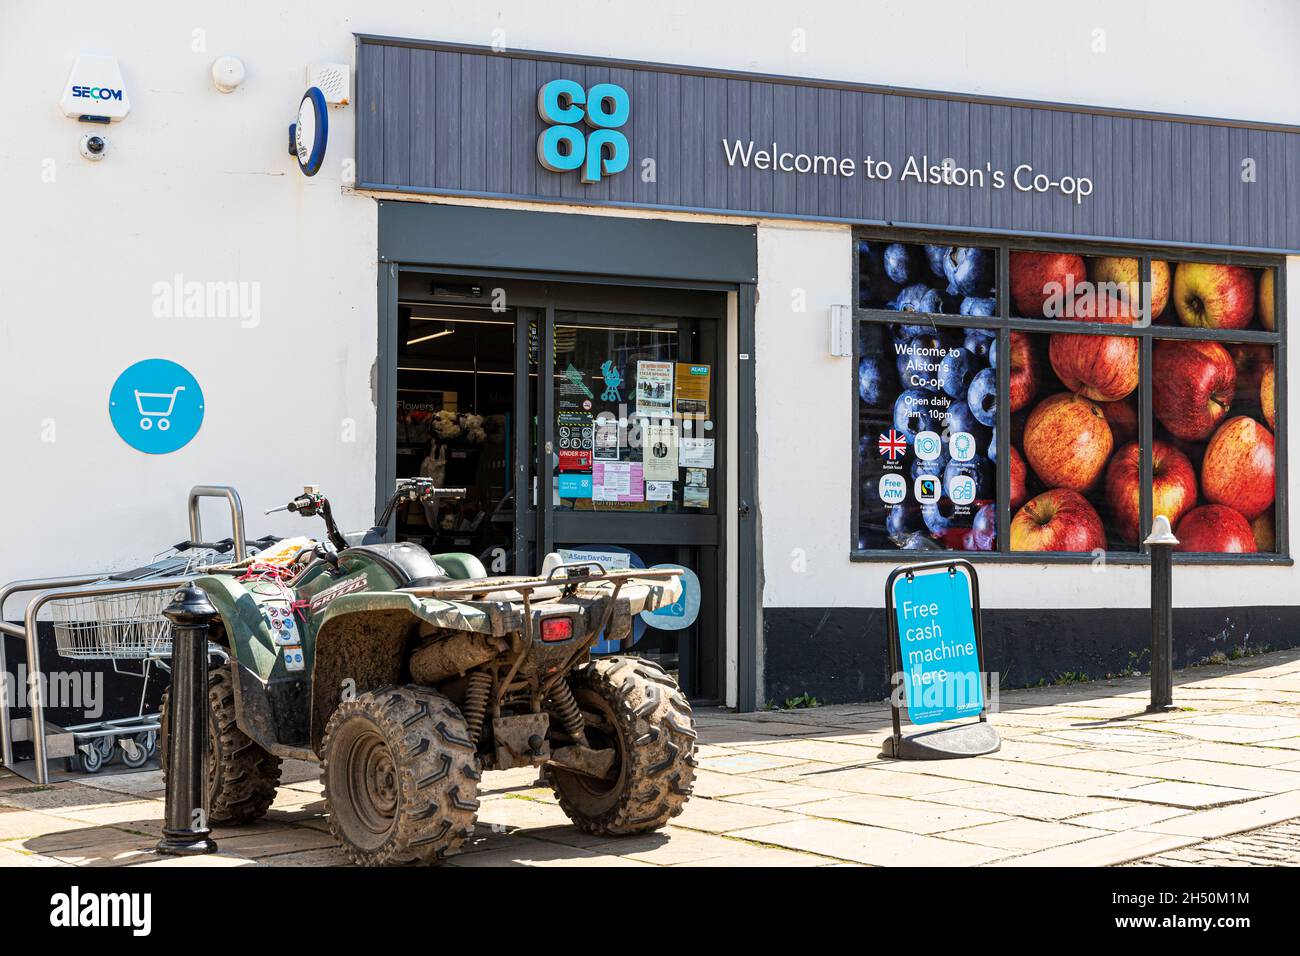 Un quad garée à l'extérieur du supermarché Co-op dans la ville de Pennines de la montagne d'Alston, Cumbria Royaume-Uni Banque D'Images